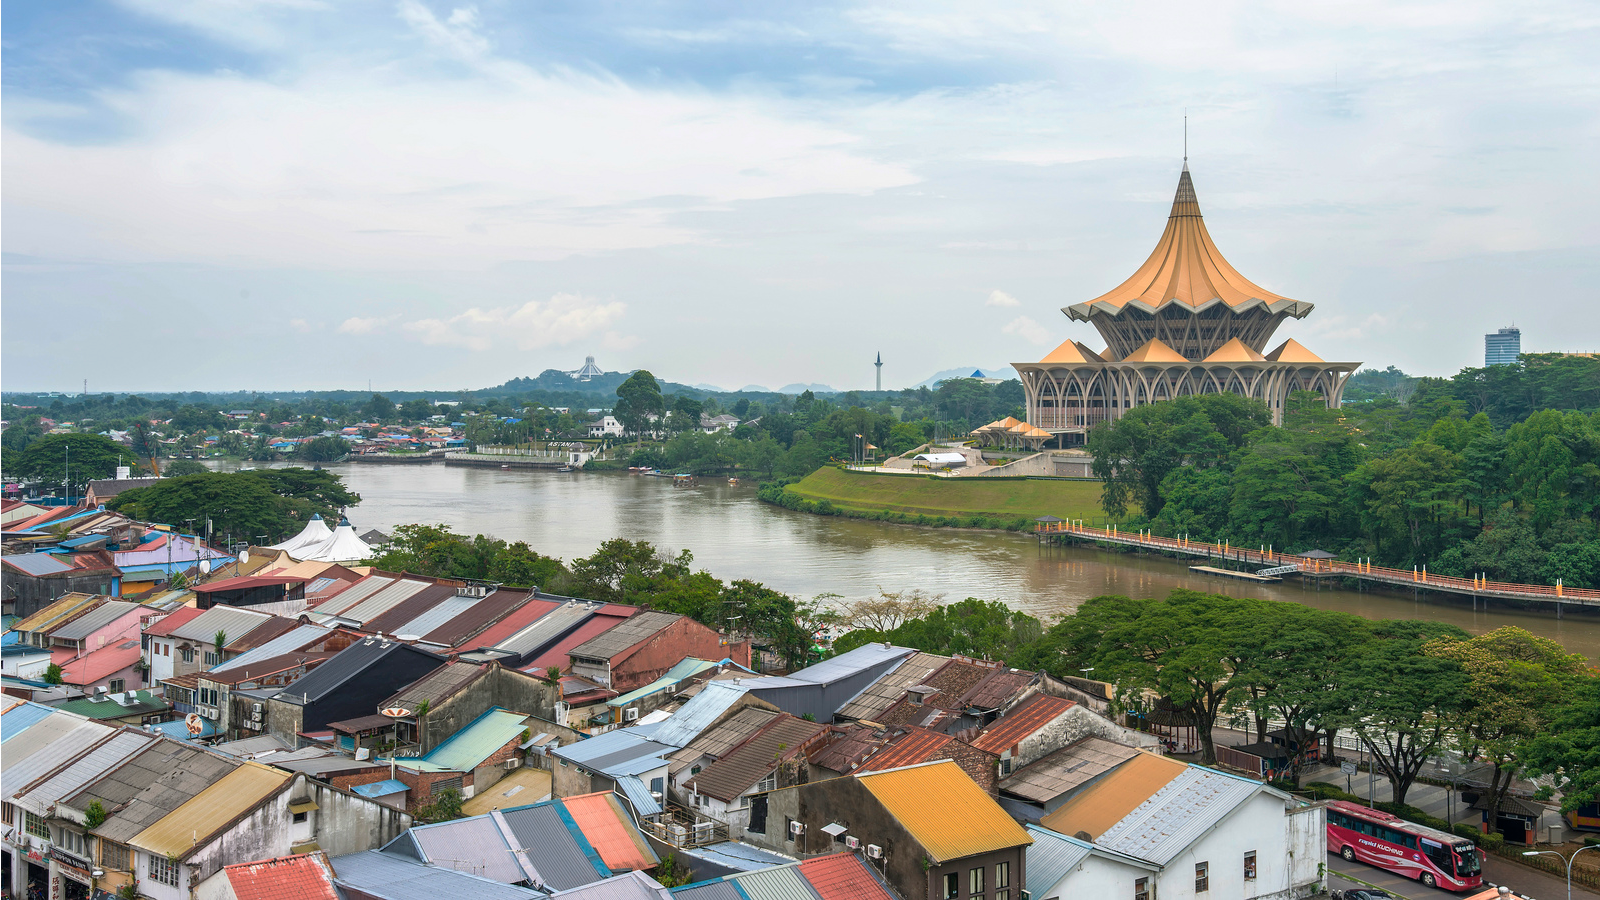 L'Etat de Sarawak, au sud de la Malaisie, compte une forte minorité chrétienne (Photo:Lenny K Photography/Flickr/CC BY 2.0)